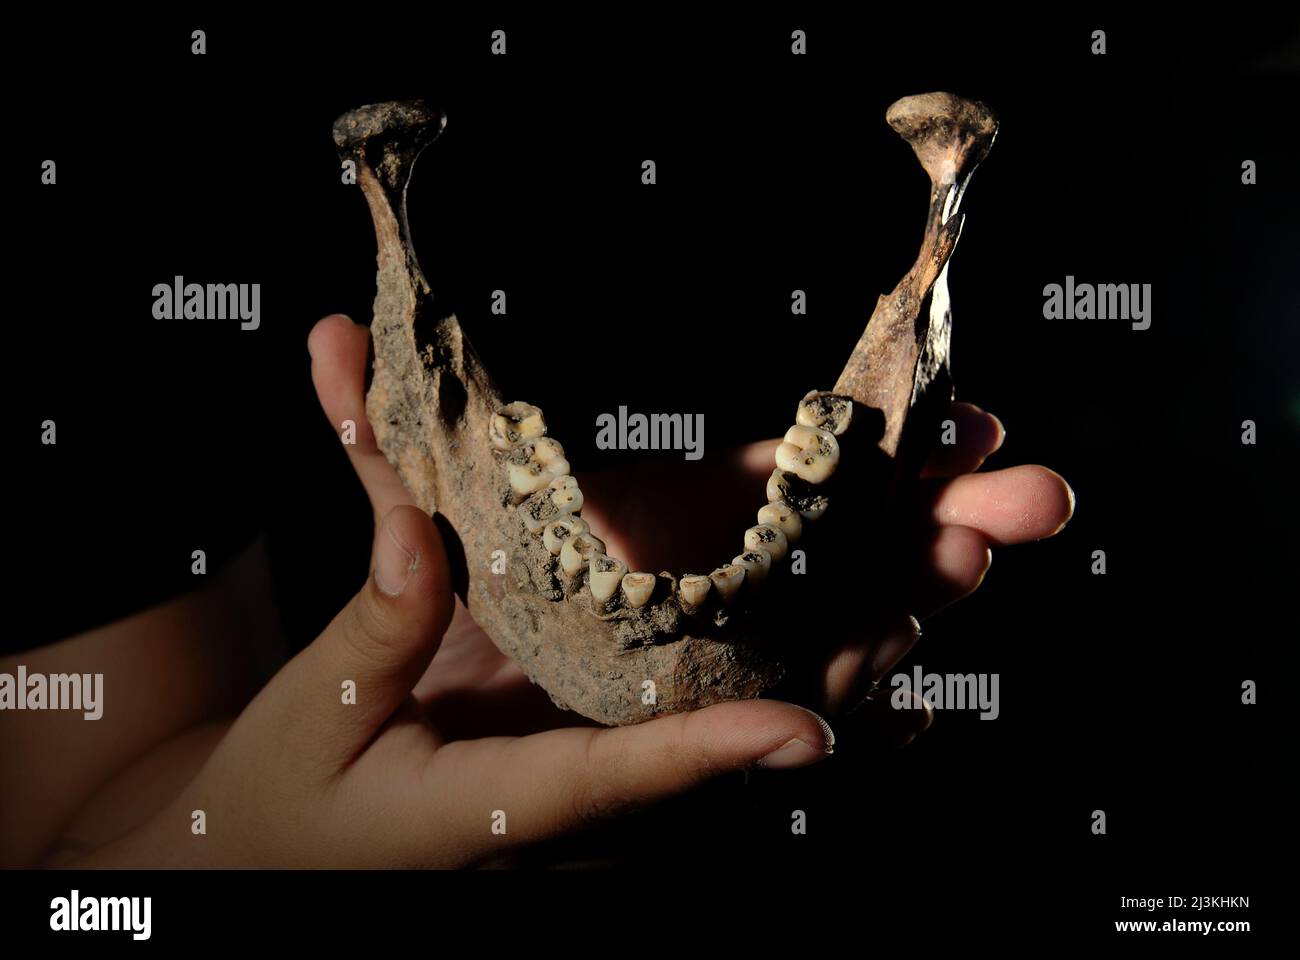 Zahnbogen des prähistorischen Menschen, der in Batujaya, Karawang, West-Java, Indonesien entdeckt wurde. Fotografiert bei der Nationalen Archäologieforschung Indonesiens in Jakarta, Indonesien. Stockfoto